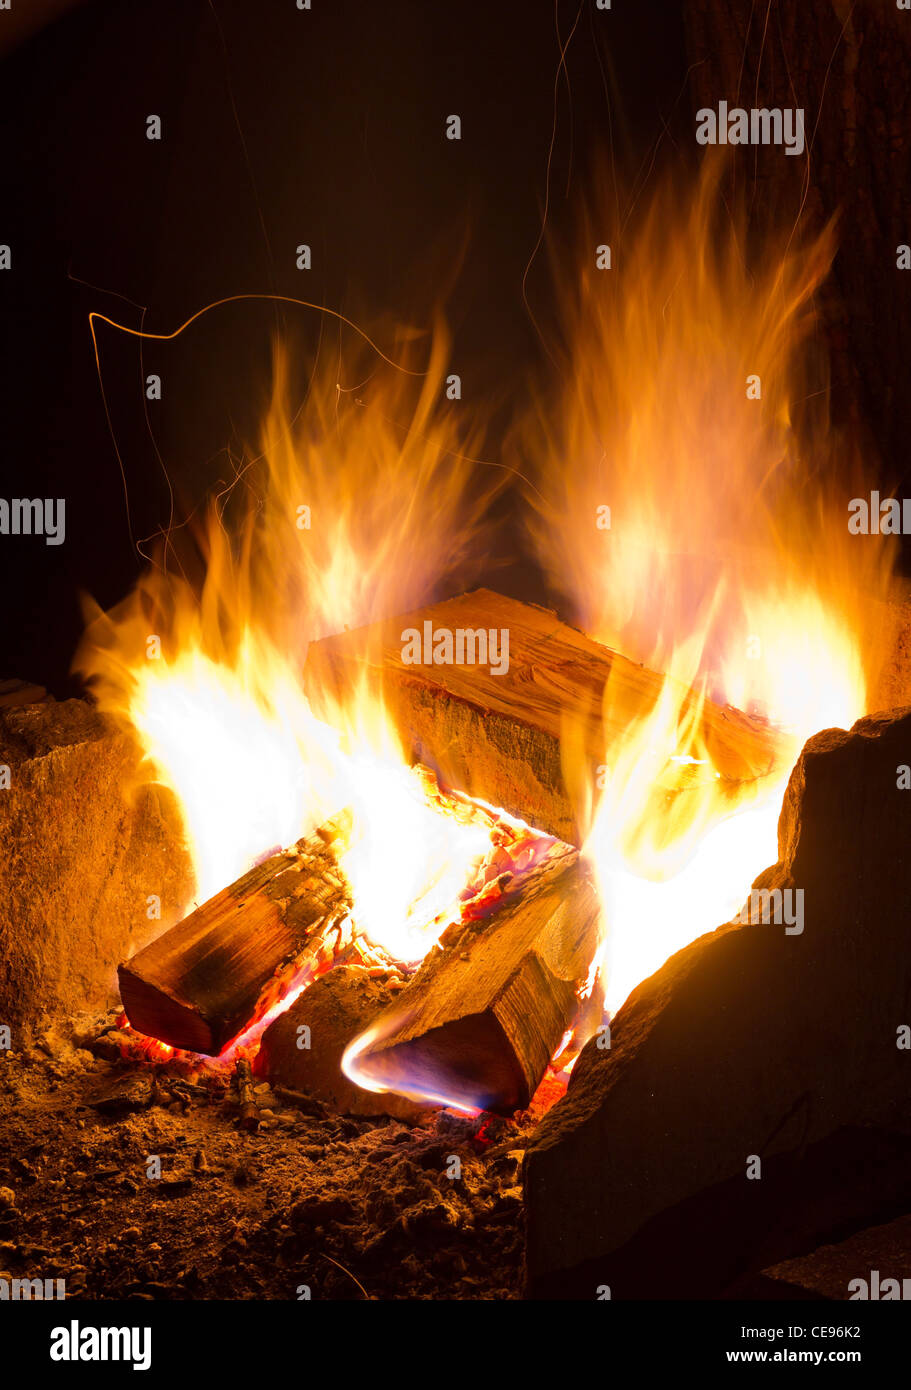 burning campfire flames at night Stock Photo